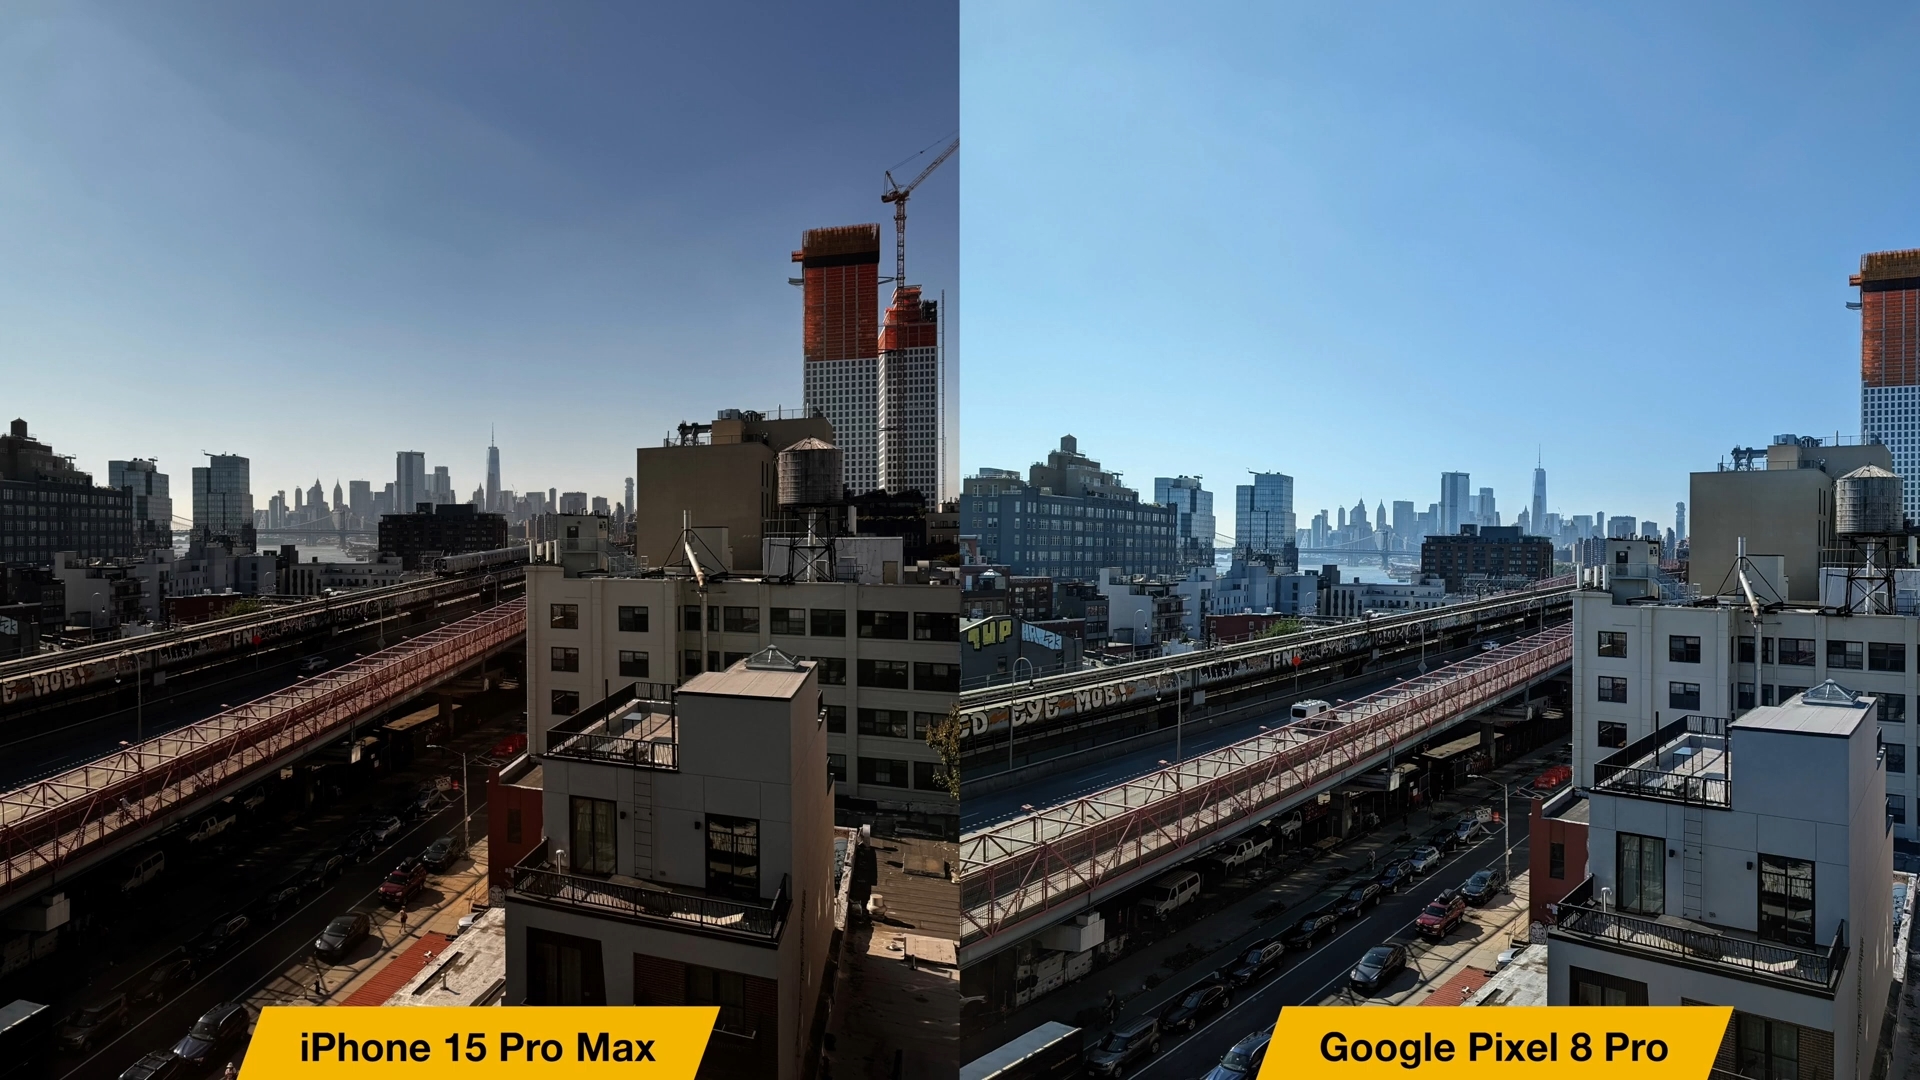 来自 iPhoneIslam.com，Google Pixel XL Pro 和 iPhone 15 Pro Max 相机的比较。